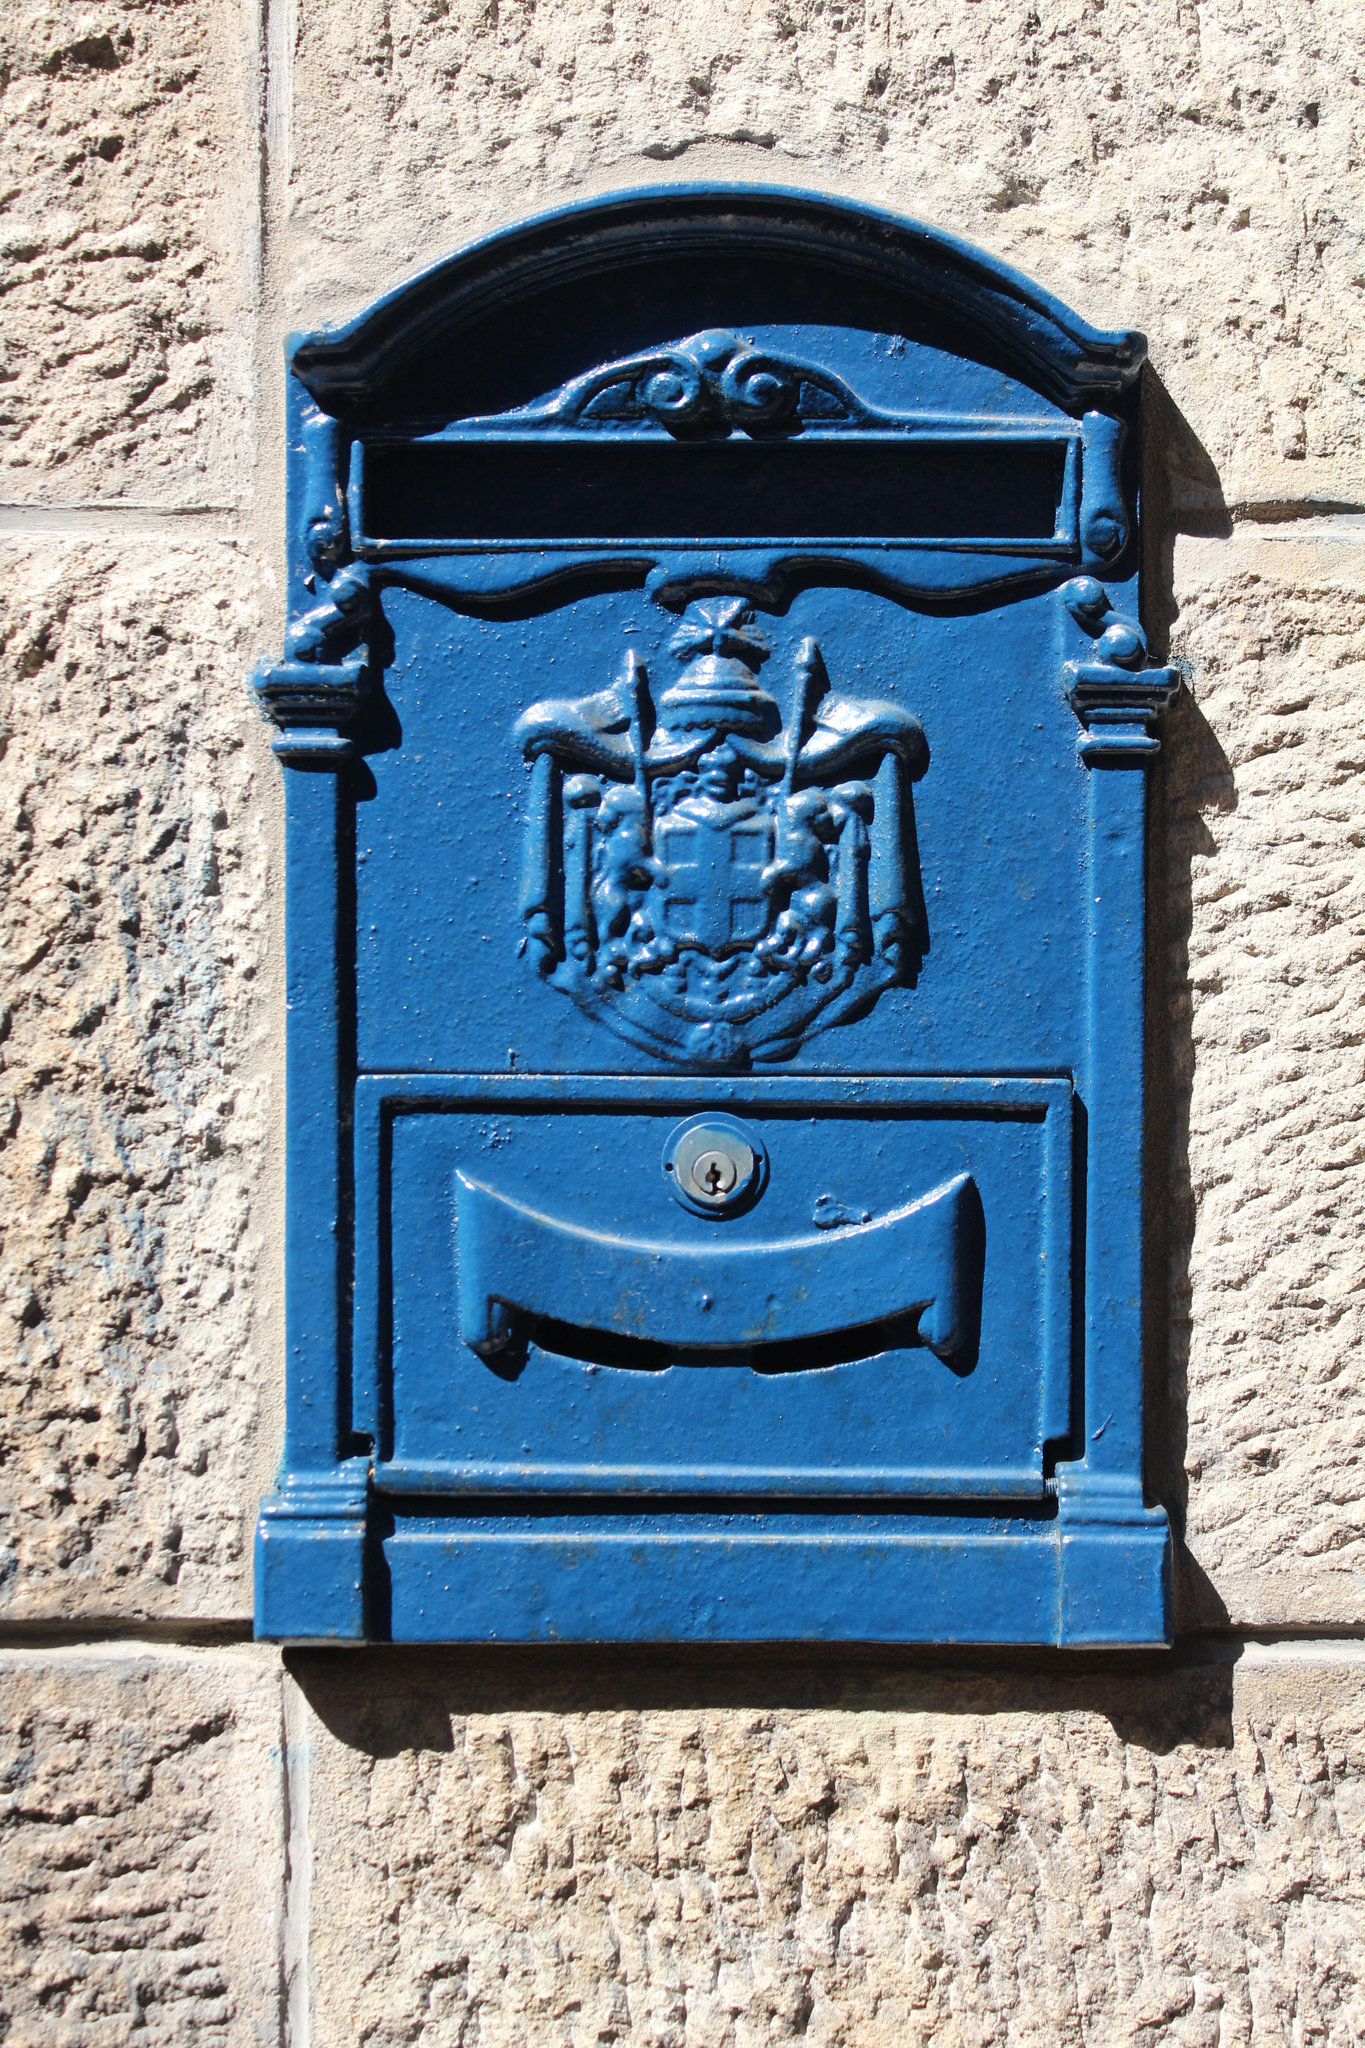 Post Box in San Marino – Pašto dėžutė San Marinoje